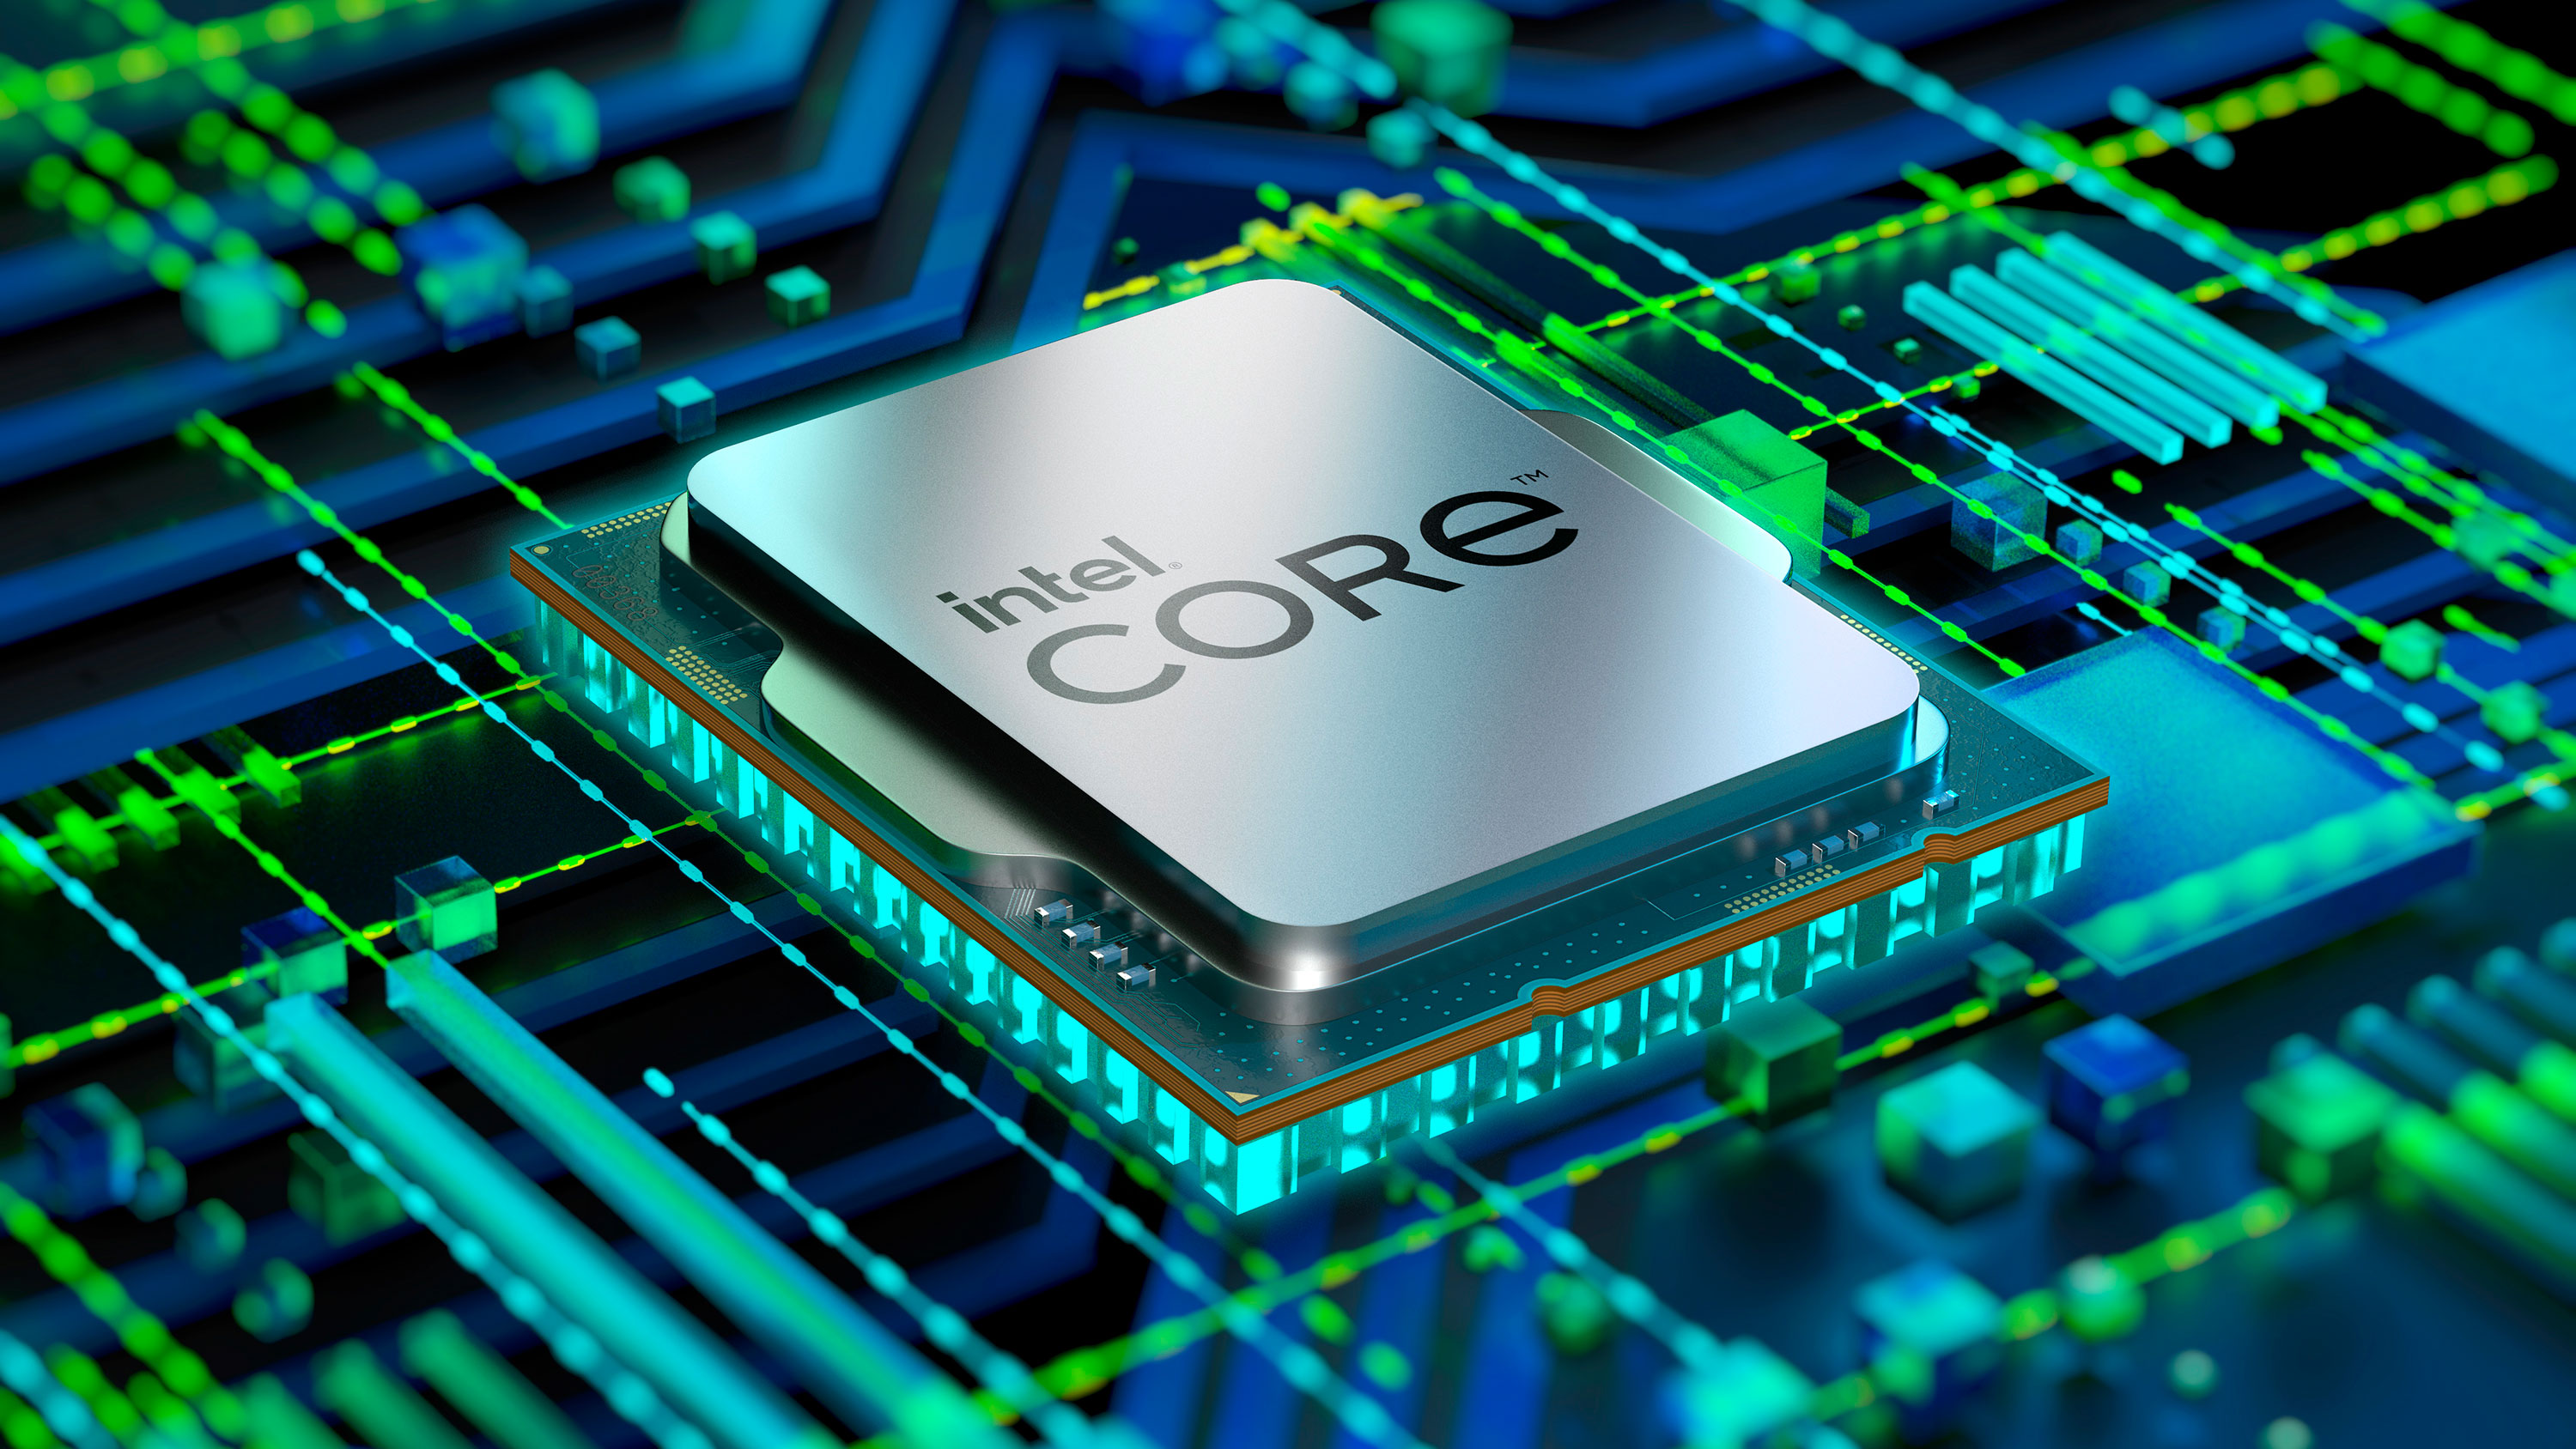 Procesor Intel Core i3-12100 je špeciálne určený pre základné dosky s päticou LGA1700 z radu Intel 600 Series, kedy sa pýšia 4 jadrami s maximálnym taktom až 4,3 GHz vďaka TB 2.0 technológii.